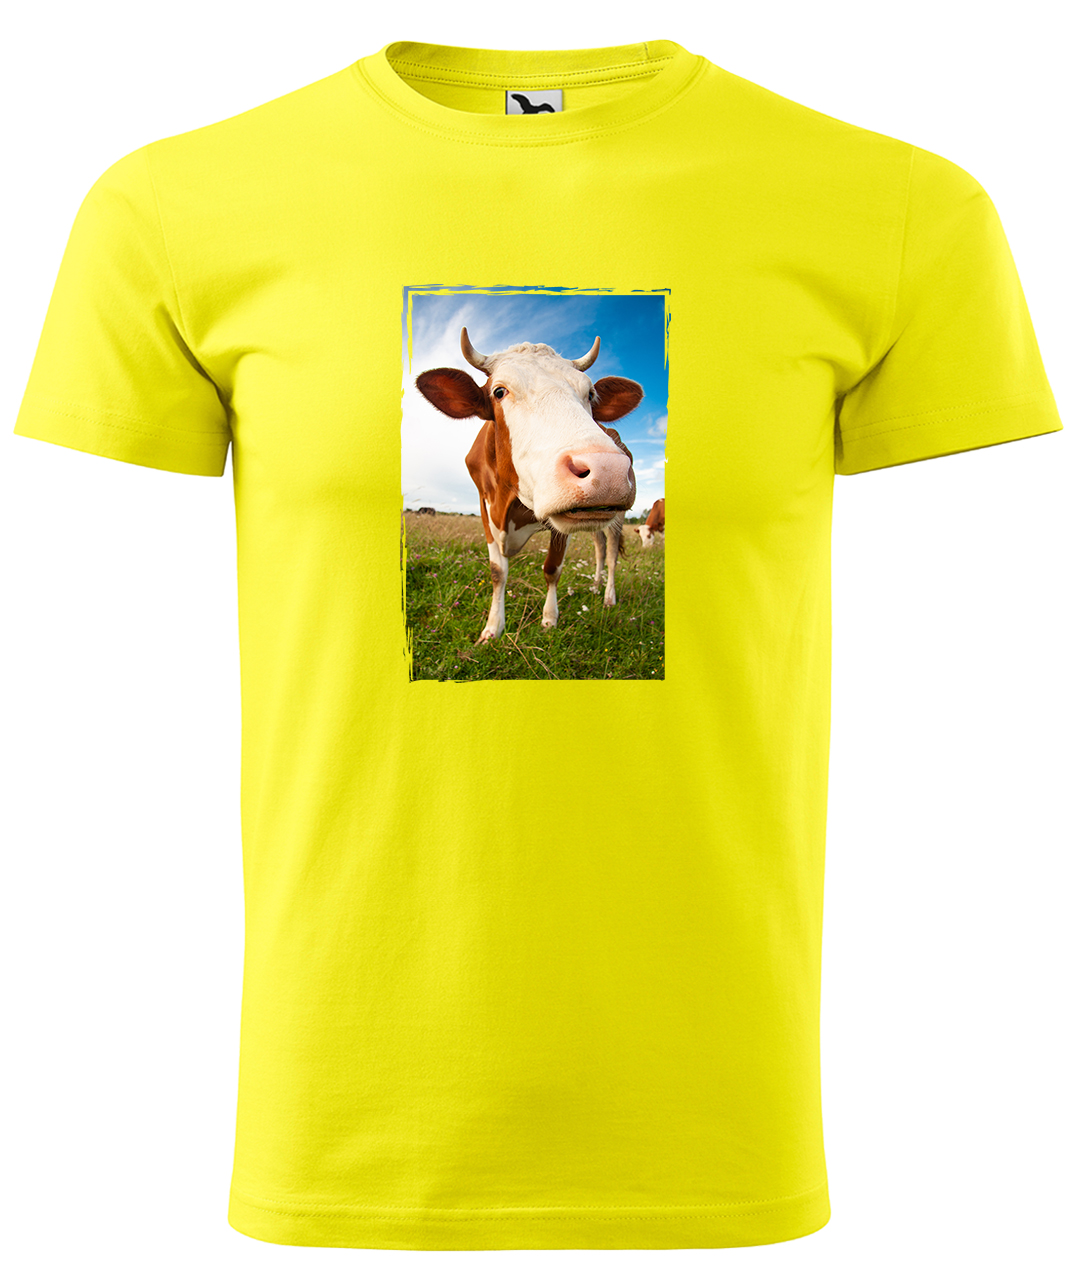 Dětské tričko s krávou - Na pastvě Velikost: 4 roky / 110 cm, Barva: Žlutá (04), Délka rukávu: Krátký rukáv